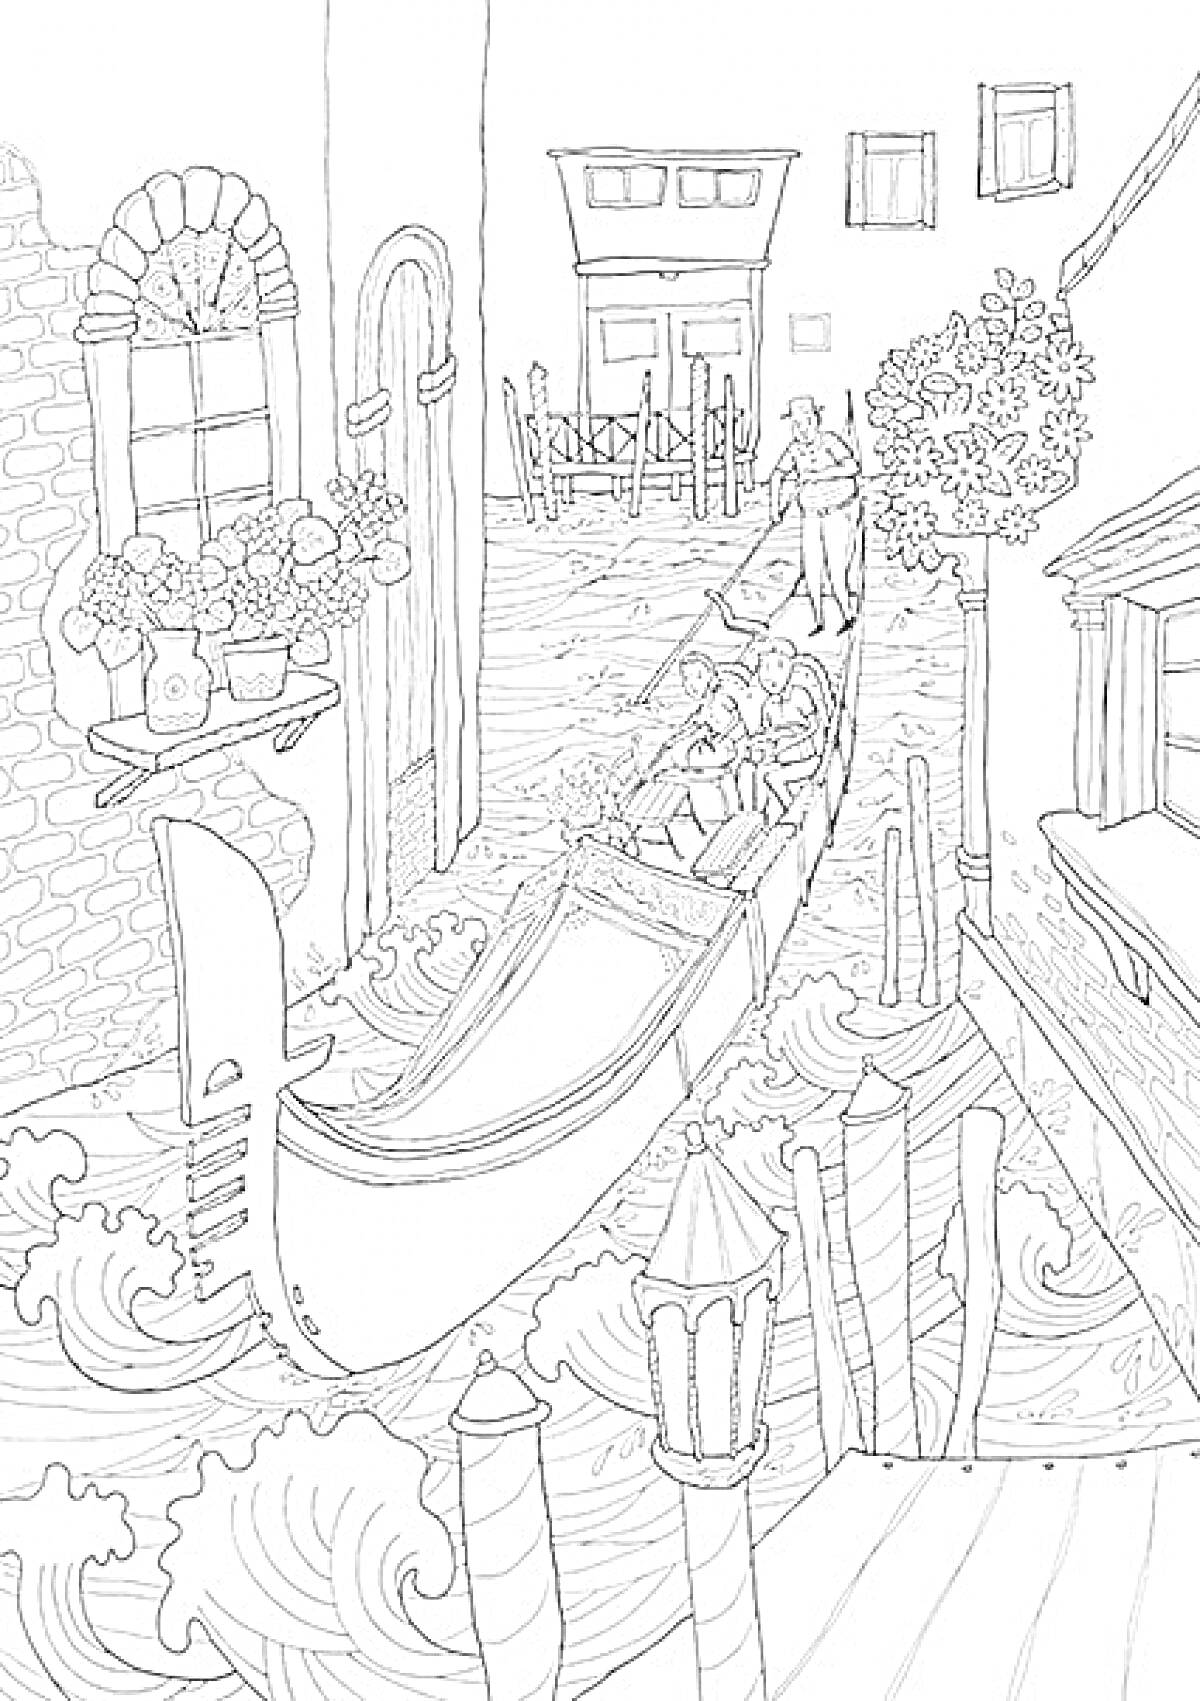 Гондола на канале в Венеции с гондольером и пассажирами, цветы на подоконниках, здания вдоль канала, улица с пешеходами